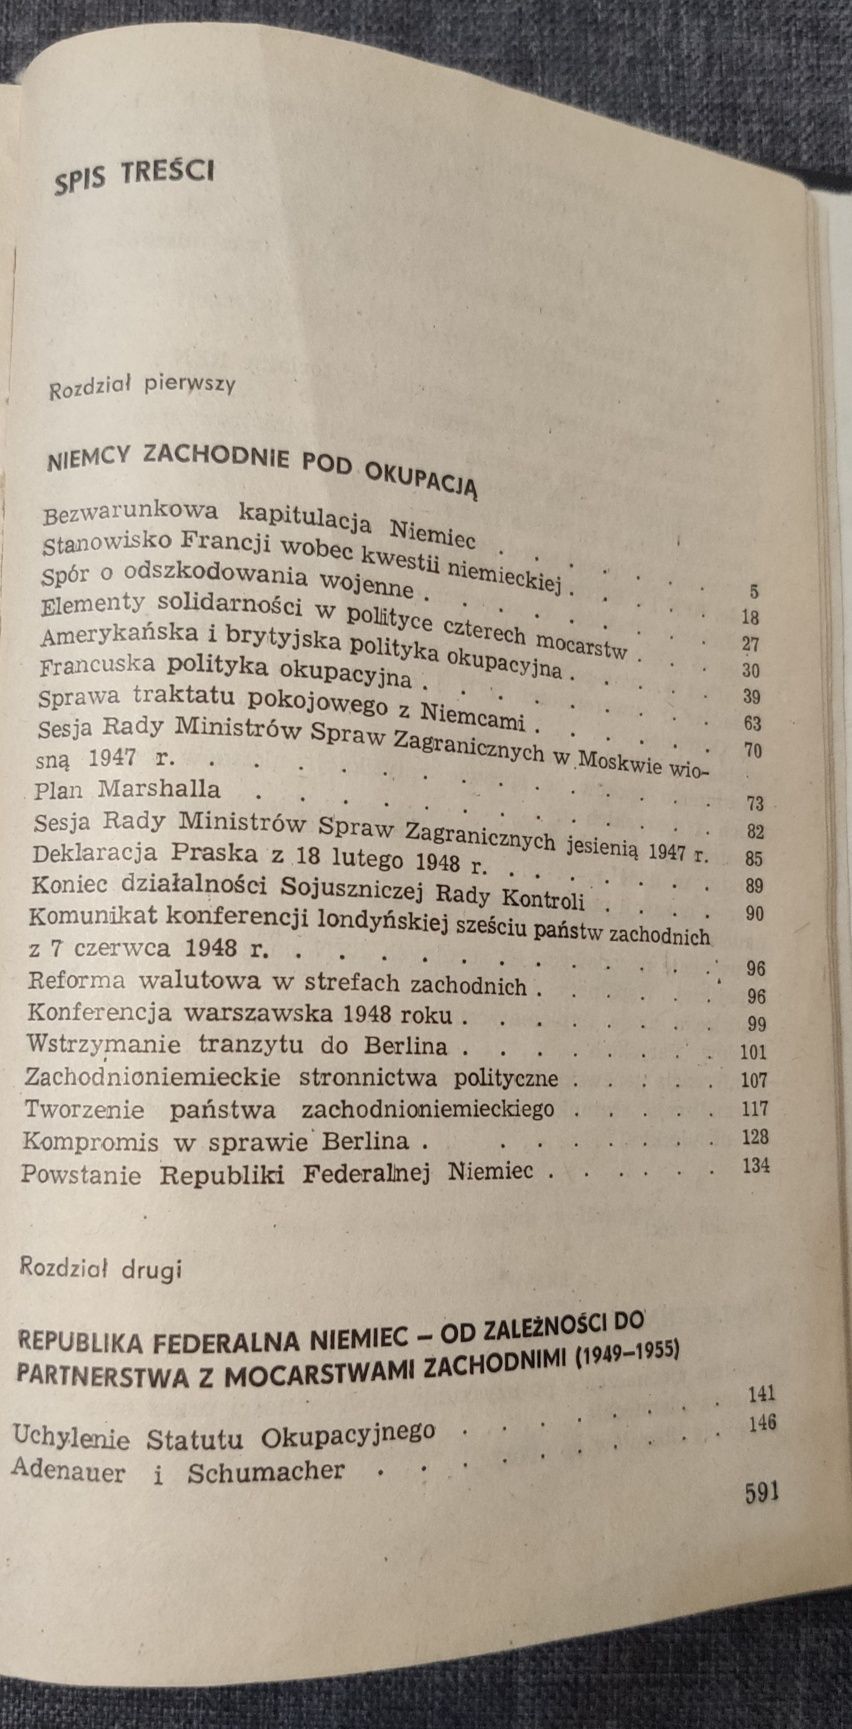 Historia RFN Jerzy Krasuski